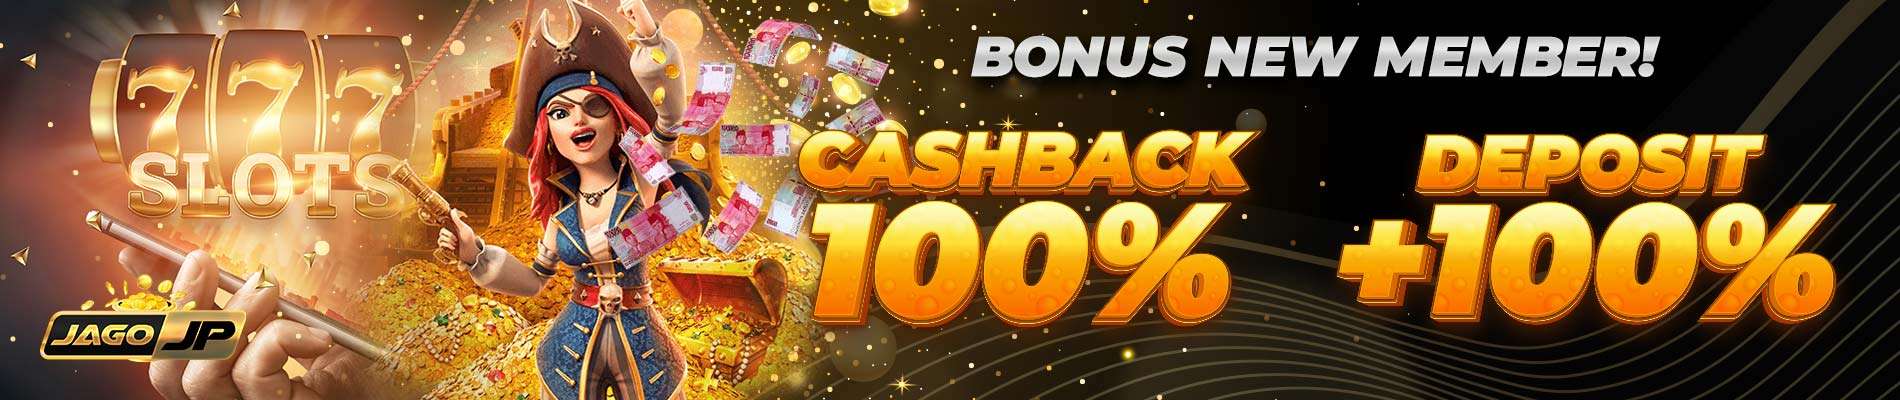 JAGOJP Bonus New Member Cashback Deposit 100%